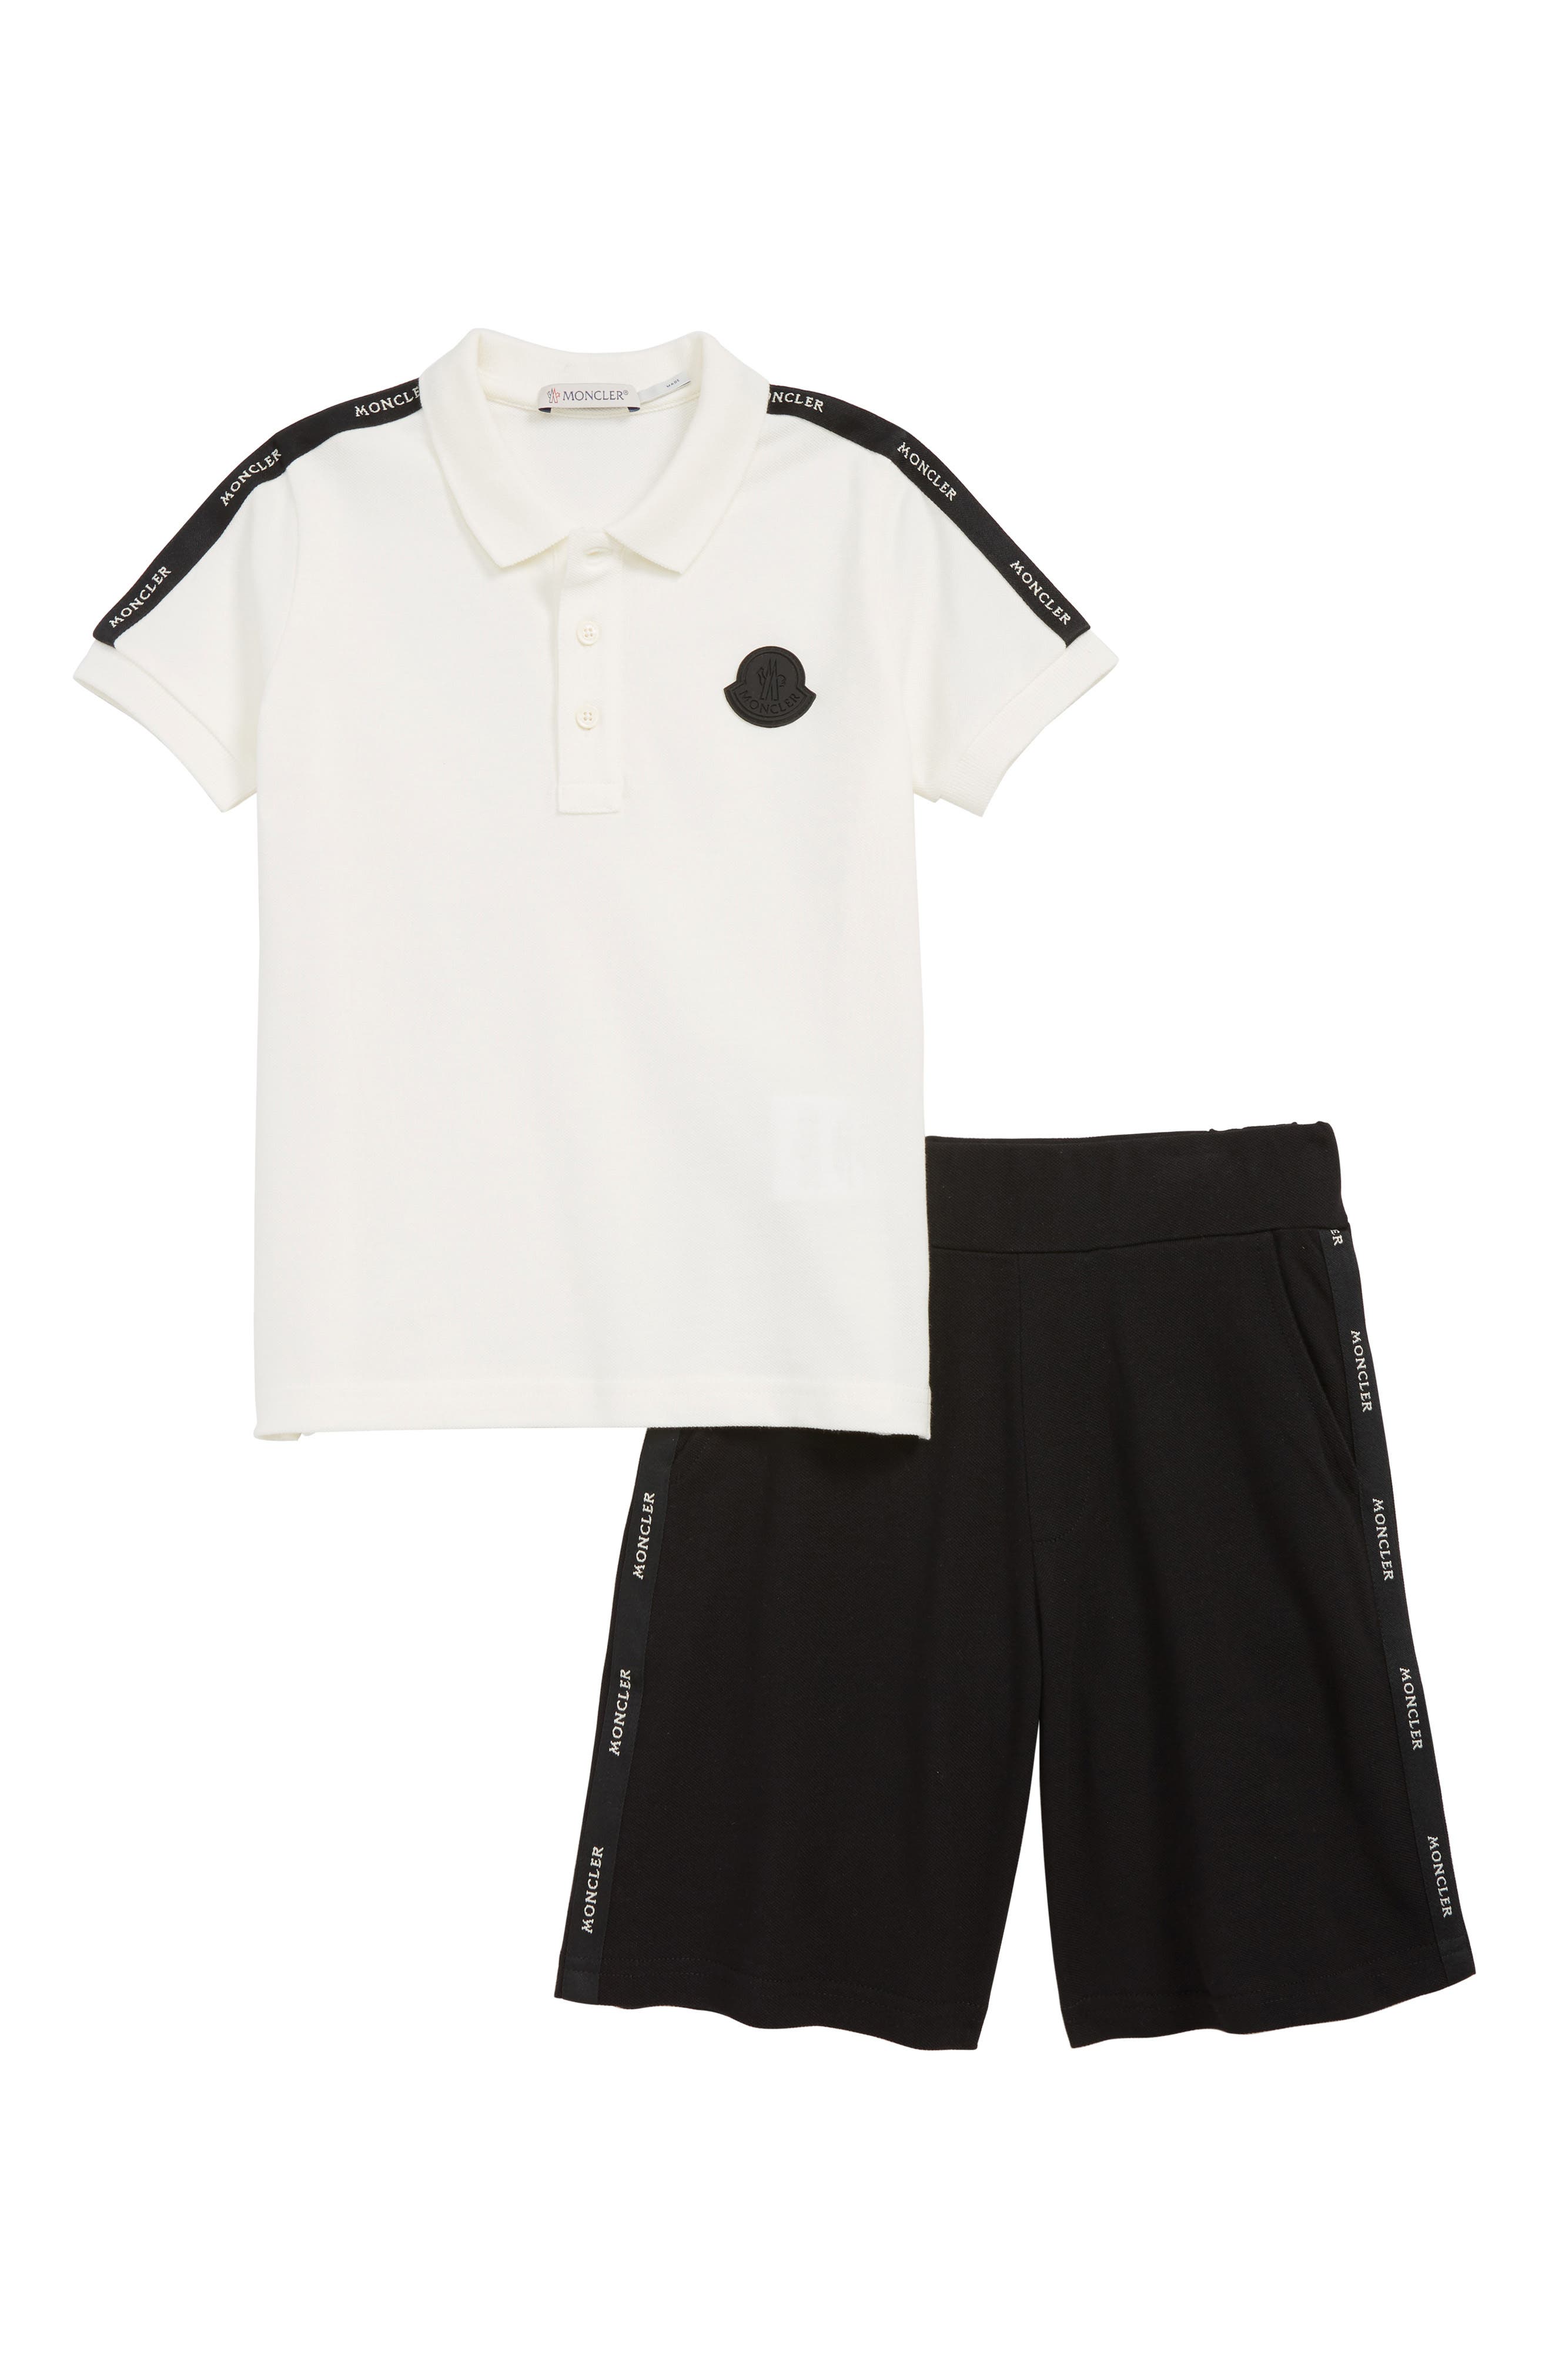 Moncler Polo \u0026 Shorts Set (Little Boys 